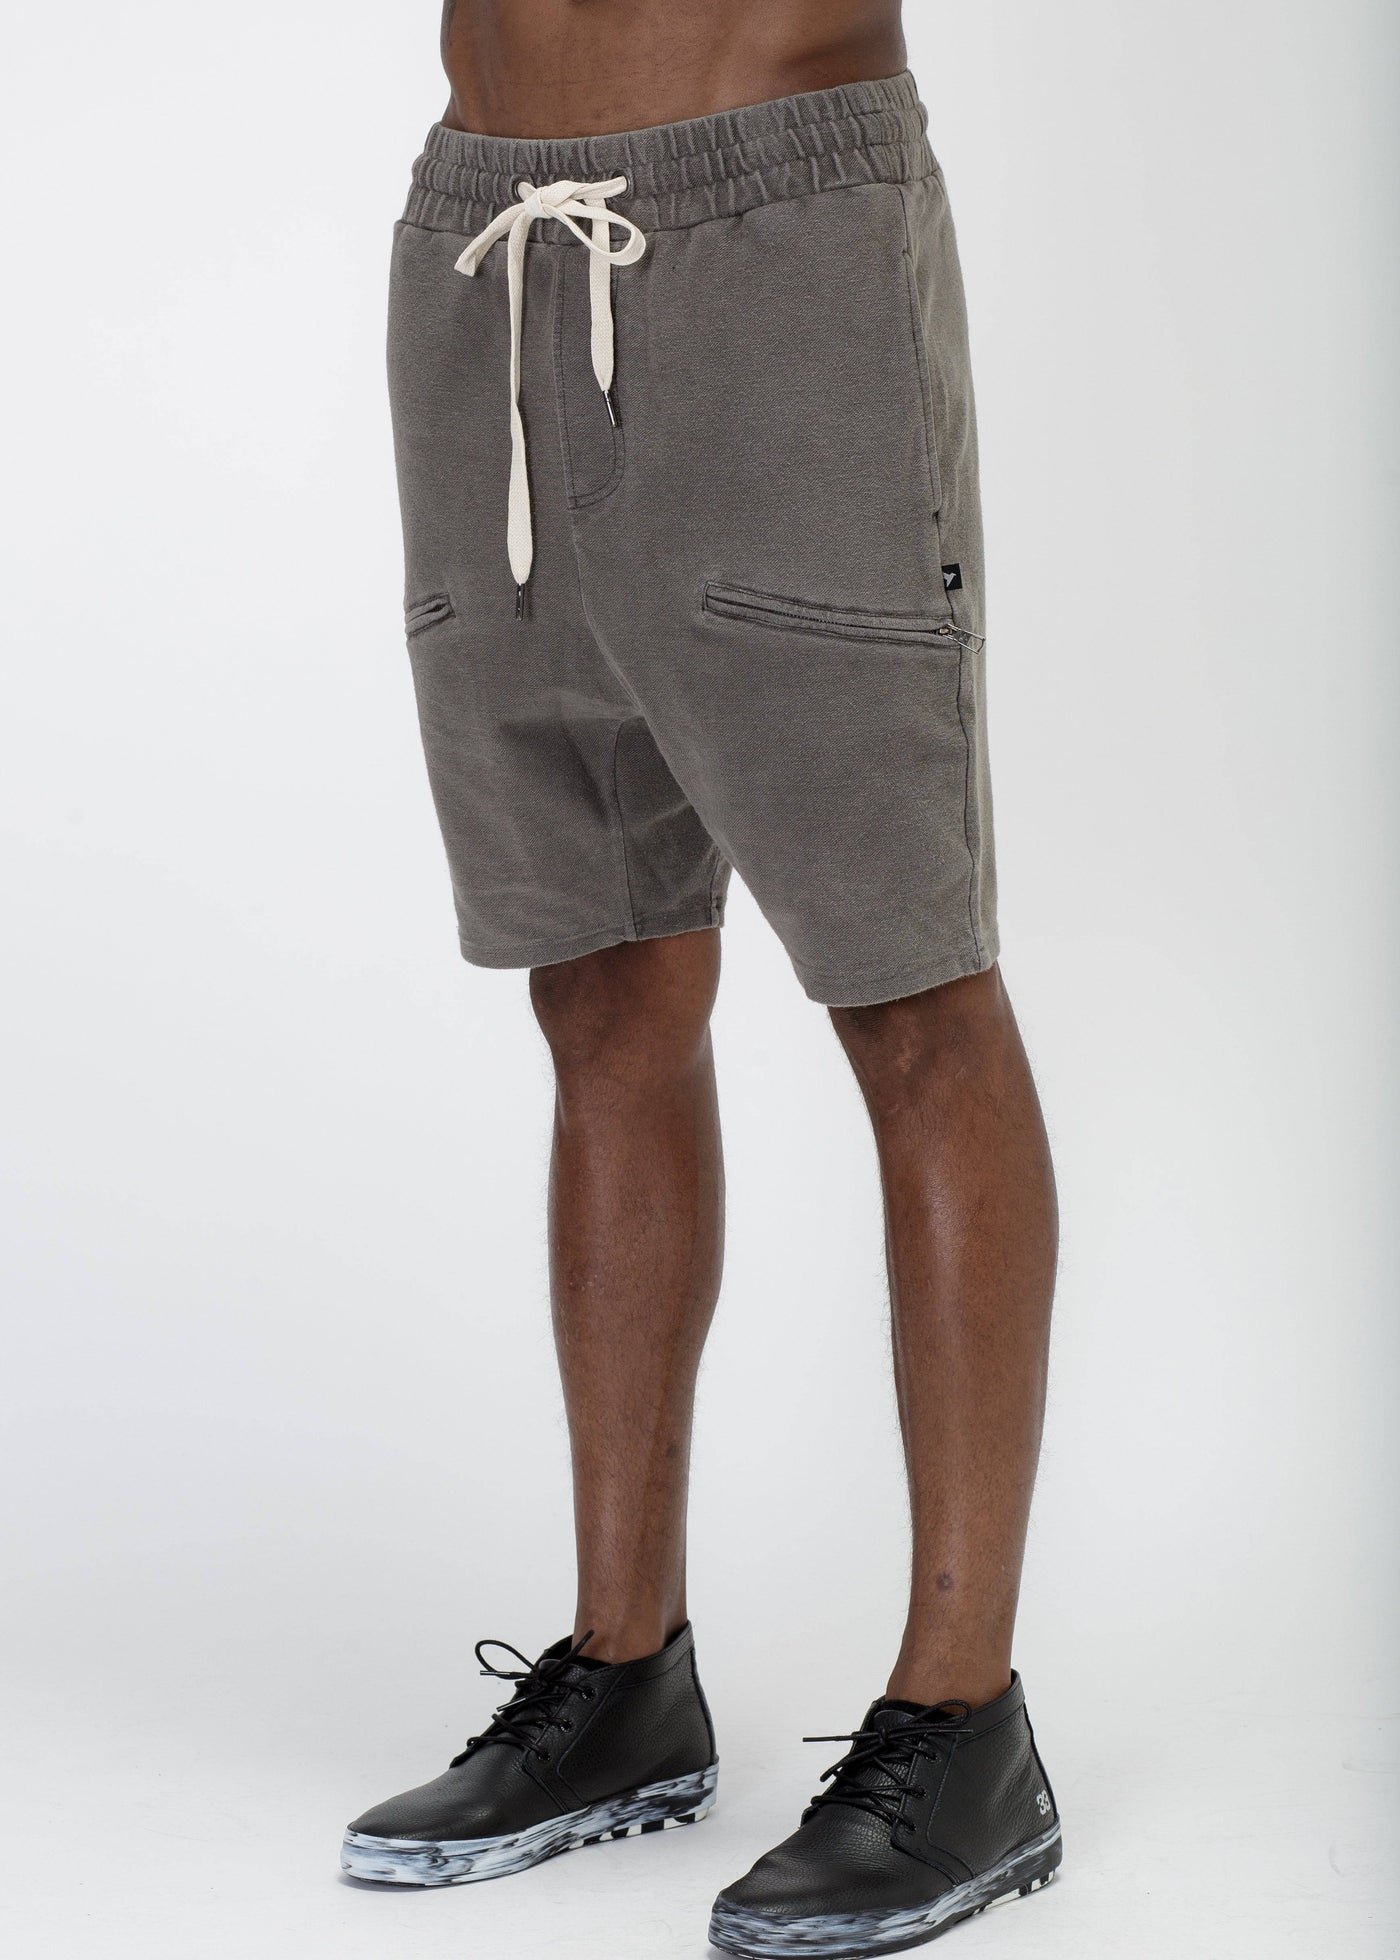 Konus Men's Heavy Denim Knit Shorts by Shop at Konus